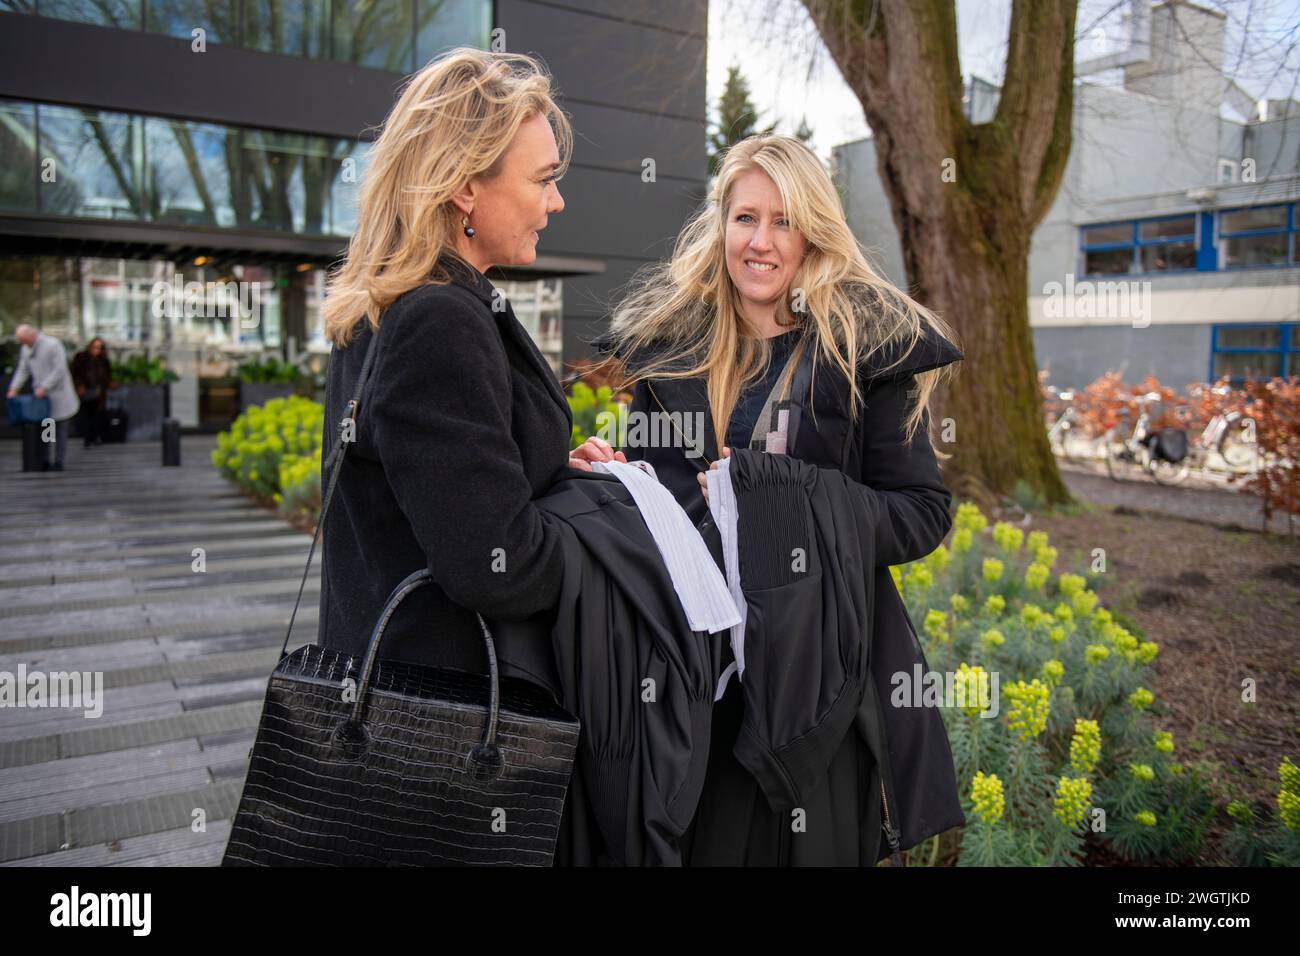 Professionelle Frau trifft sich außerhalb ihrer Arbeit. Begrüßungsgespräch Stockfoto